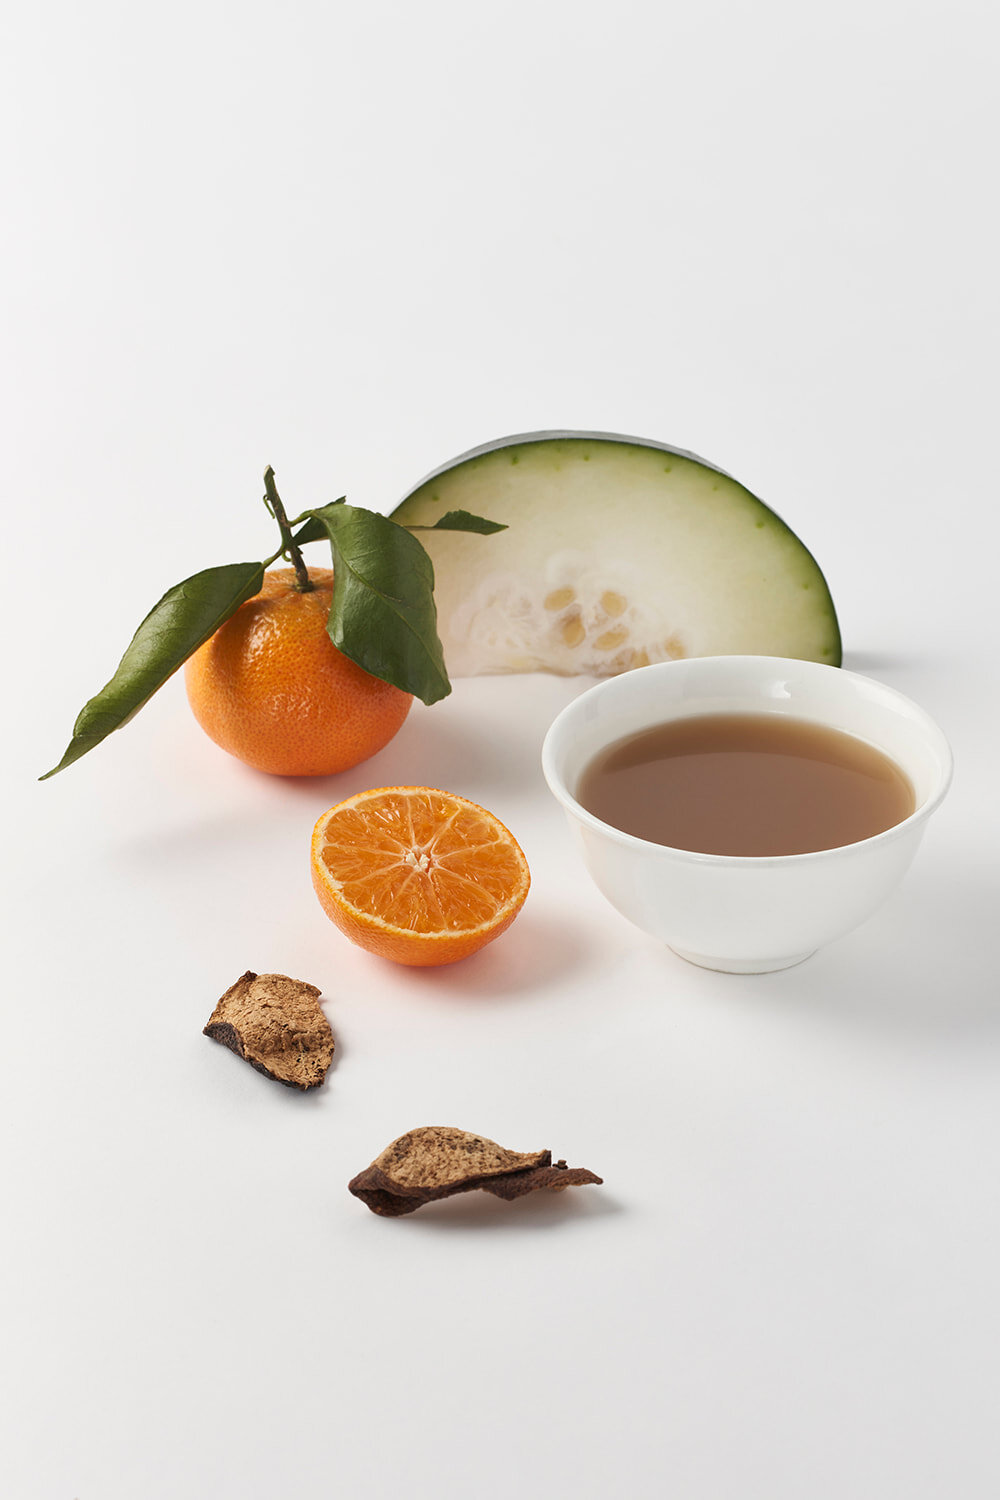 冬瓜瓜皮鸭汤(据说可以吸收油脂降低胆固醇)是丽华轩的炒面之一。照片由丽华轩提供。